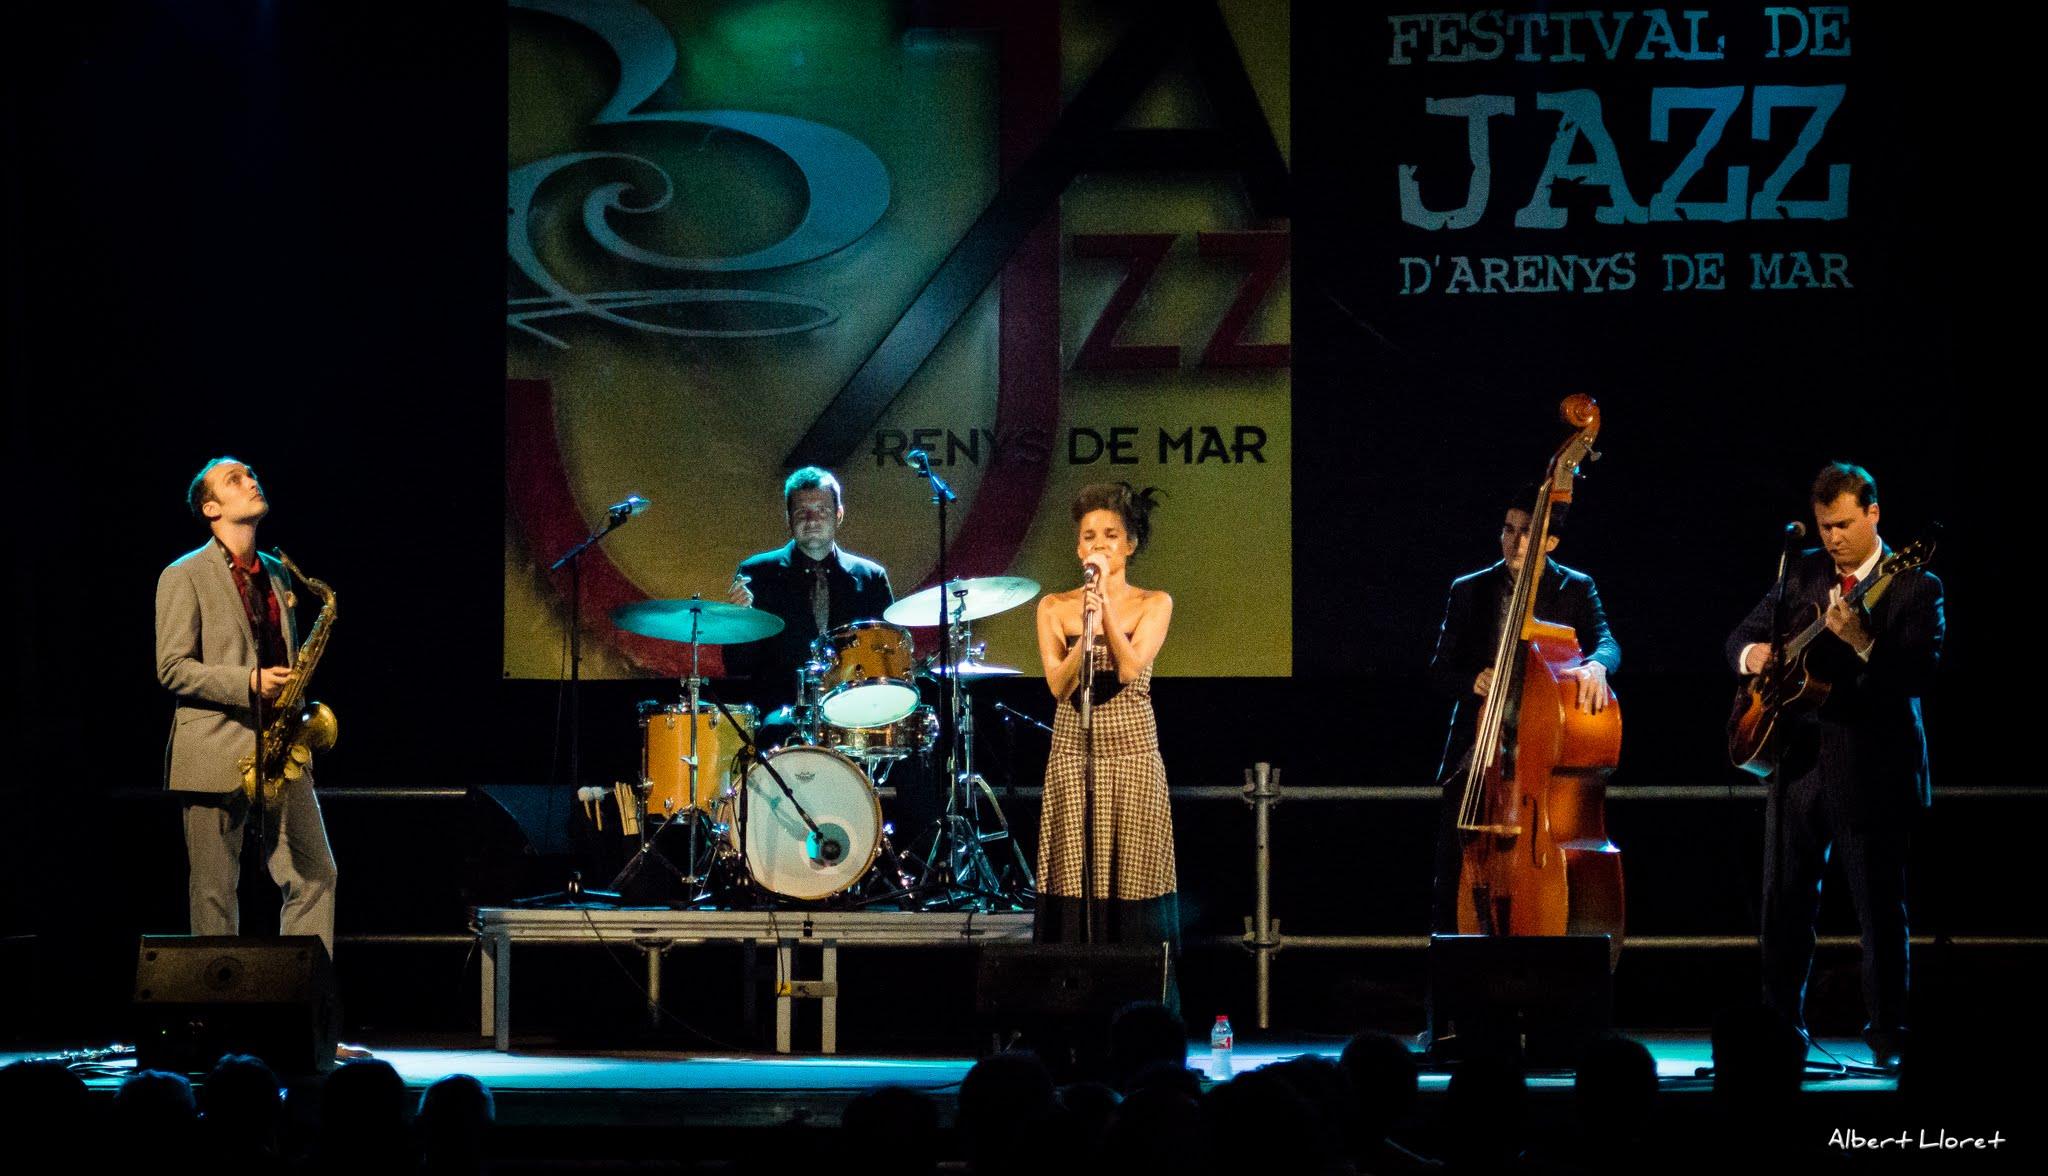 Imatges del 25 Festival de Jazz d'Arenys de Mar - 2016 - Foto 38410416